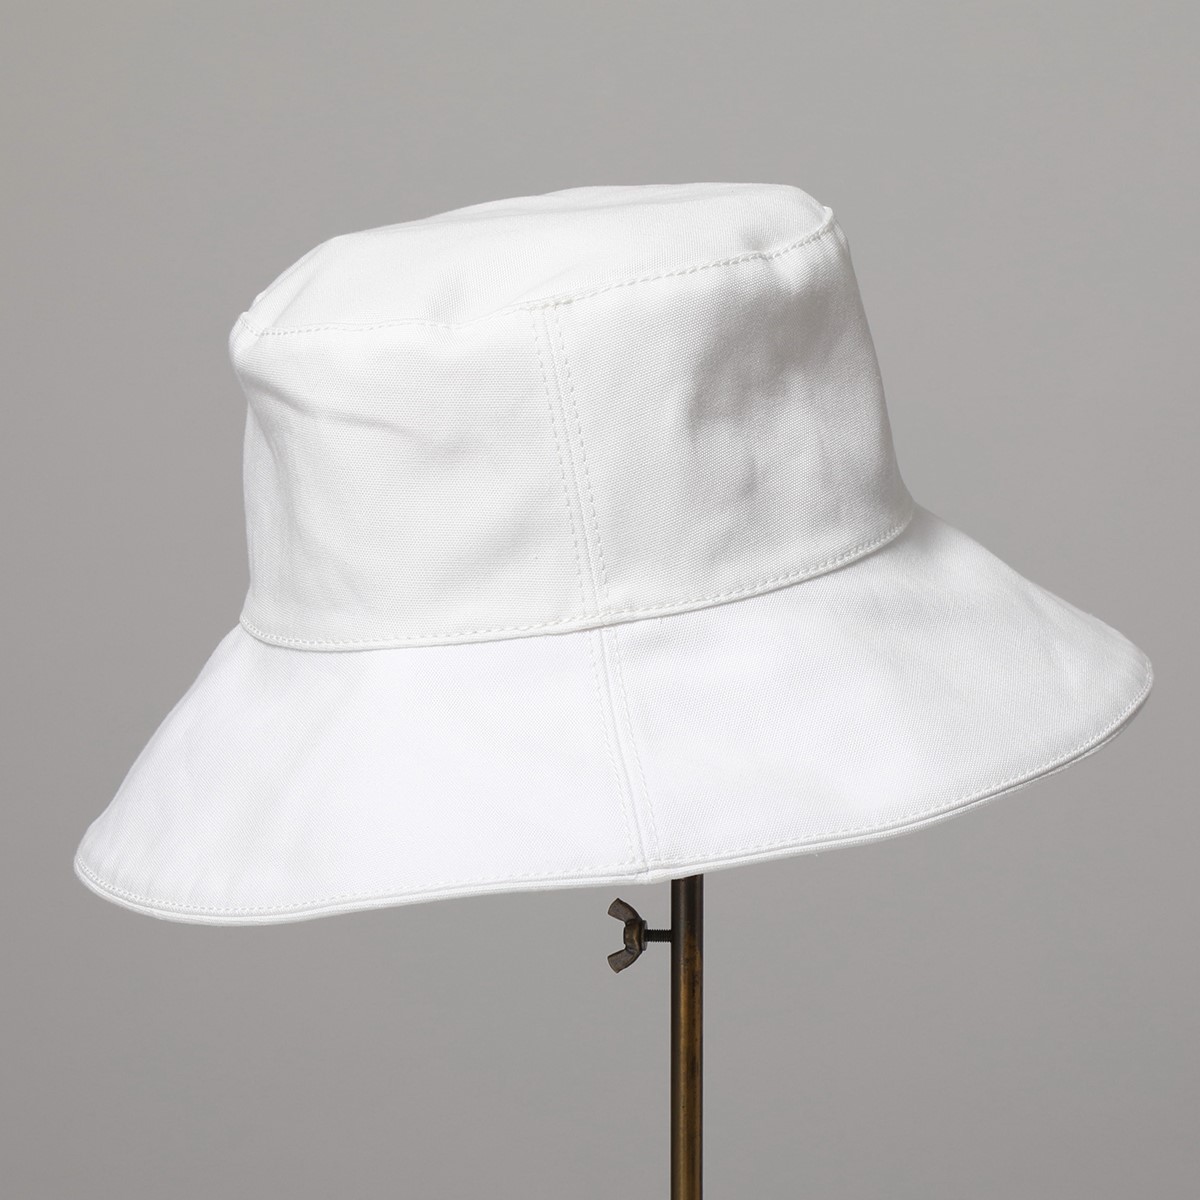 HELEN KAMINSKI ヘレンカミンスキー バケットハット ENSLEY レディース コットン 帽子 カラー2色 | インポートセレクト  musee